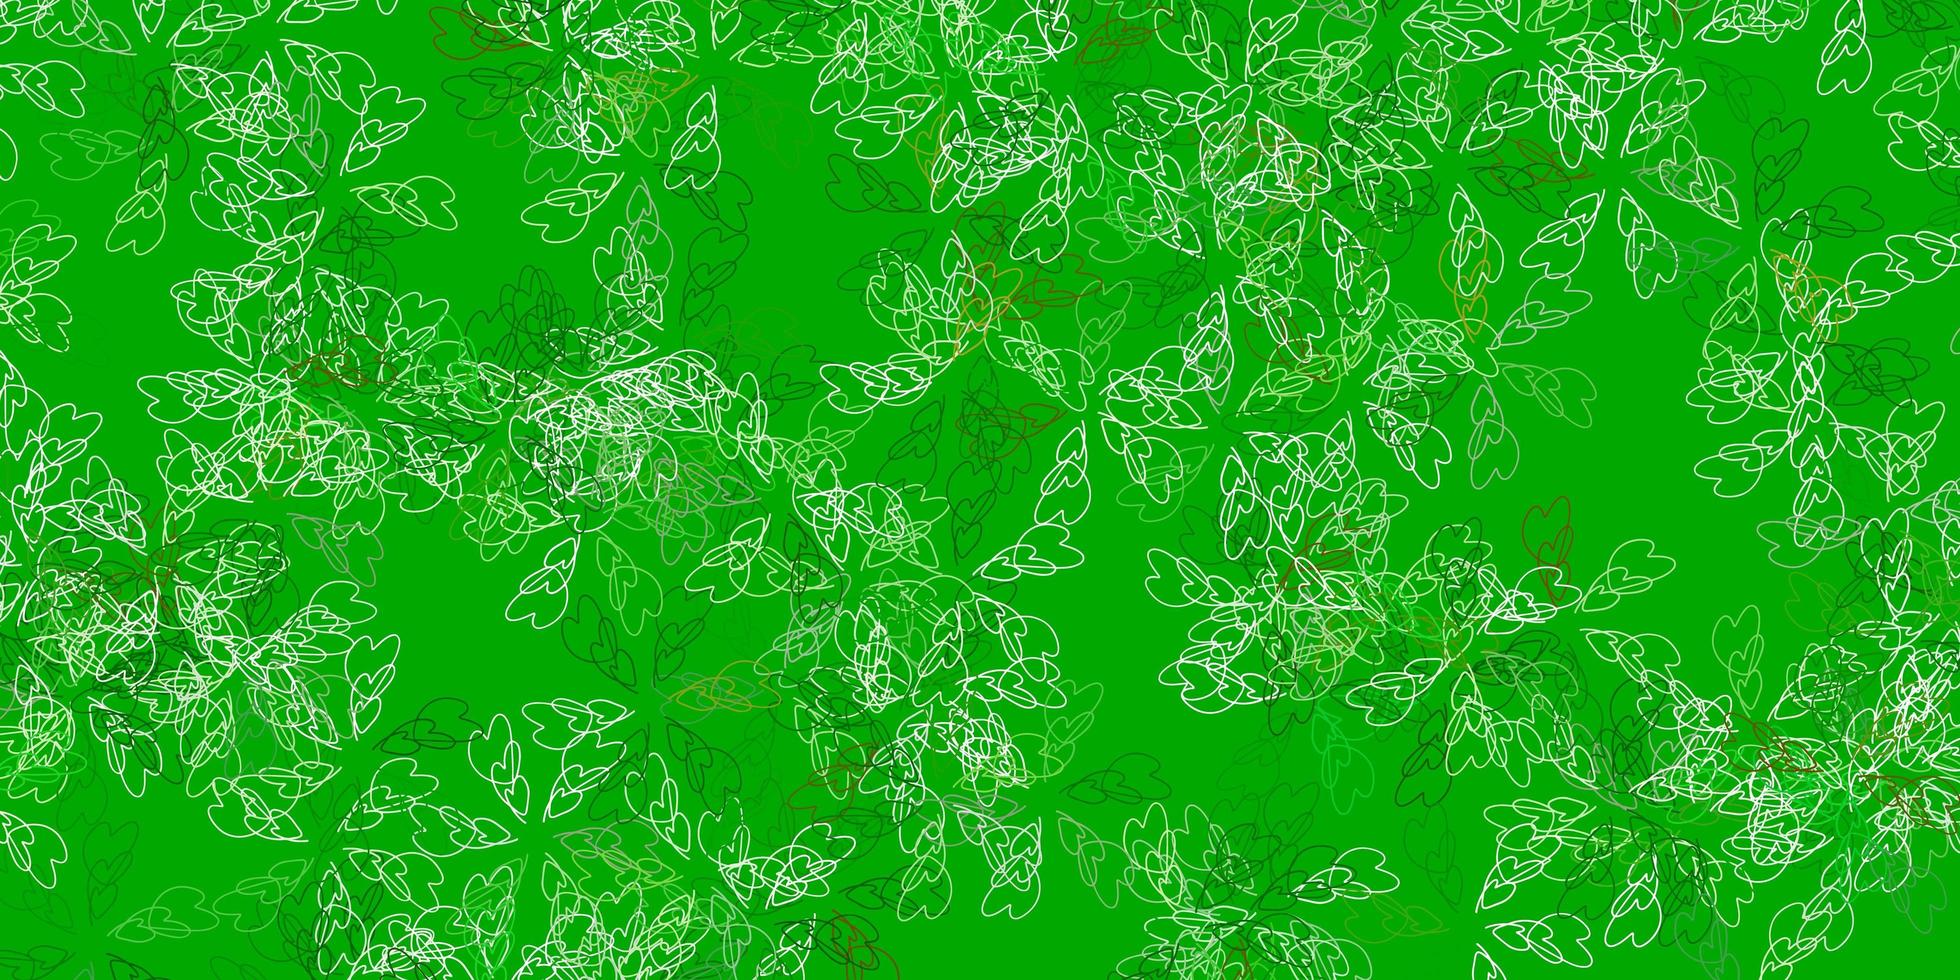 ljusgrön, gul vektor abstrakt bakgrund med blad.